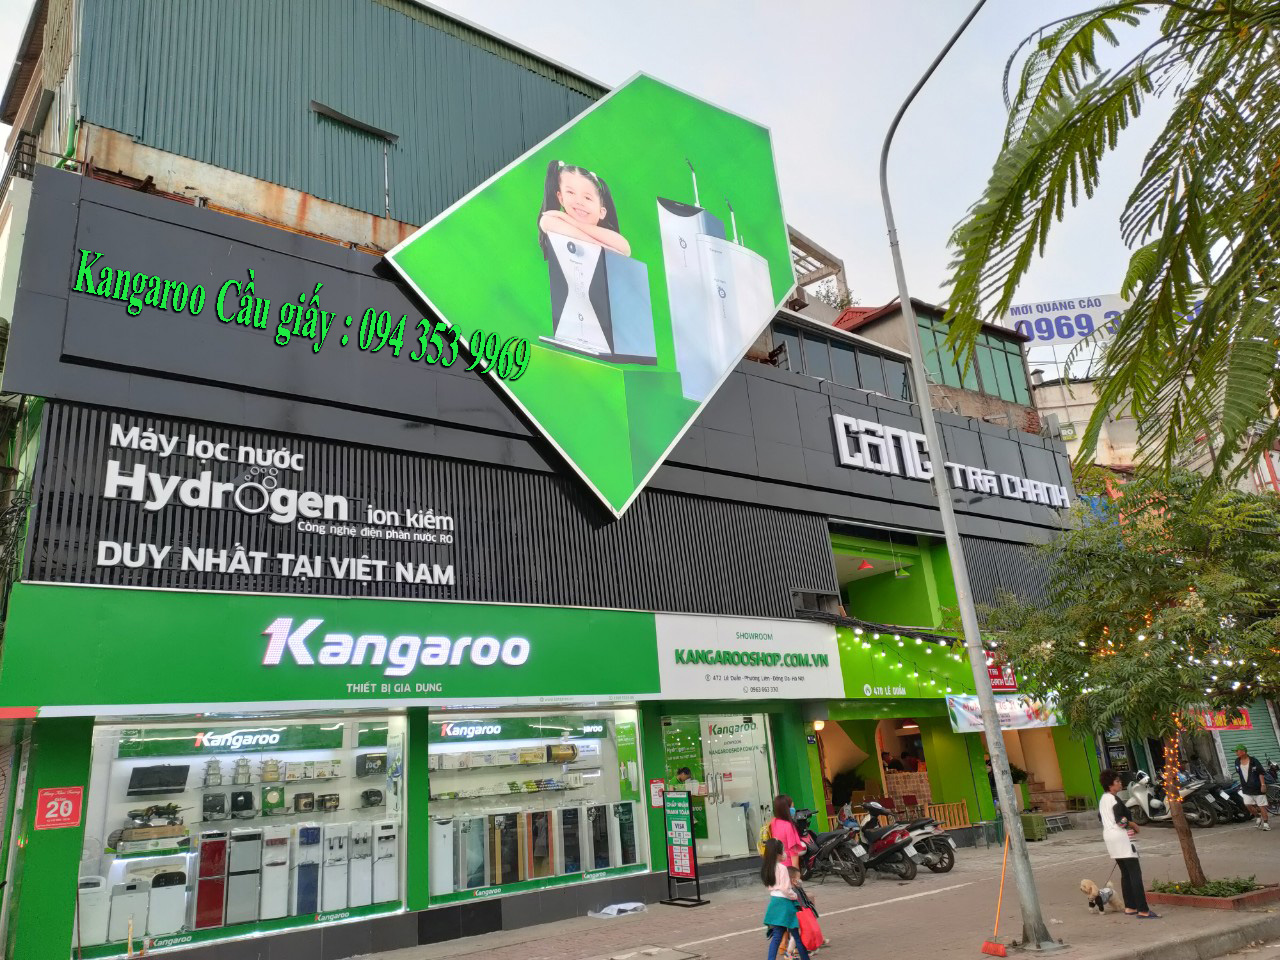 Cửa hàng Kangaroo tại cầu giấy : 094 353 9969